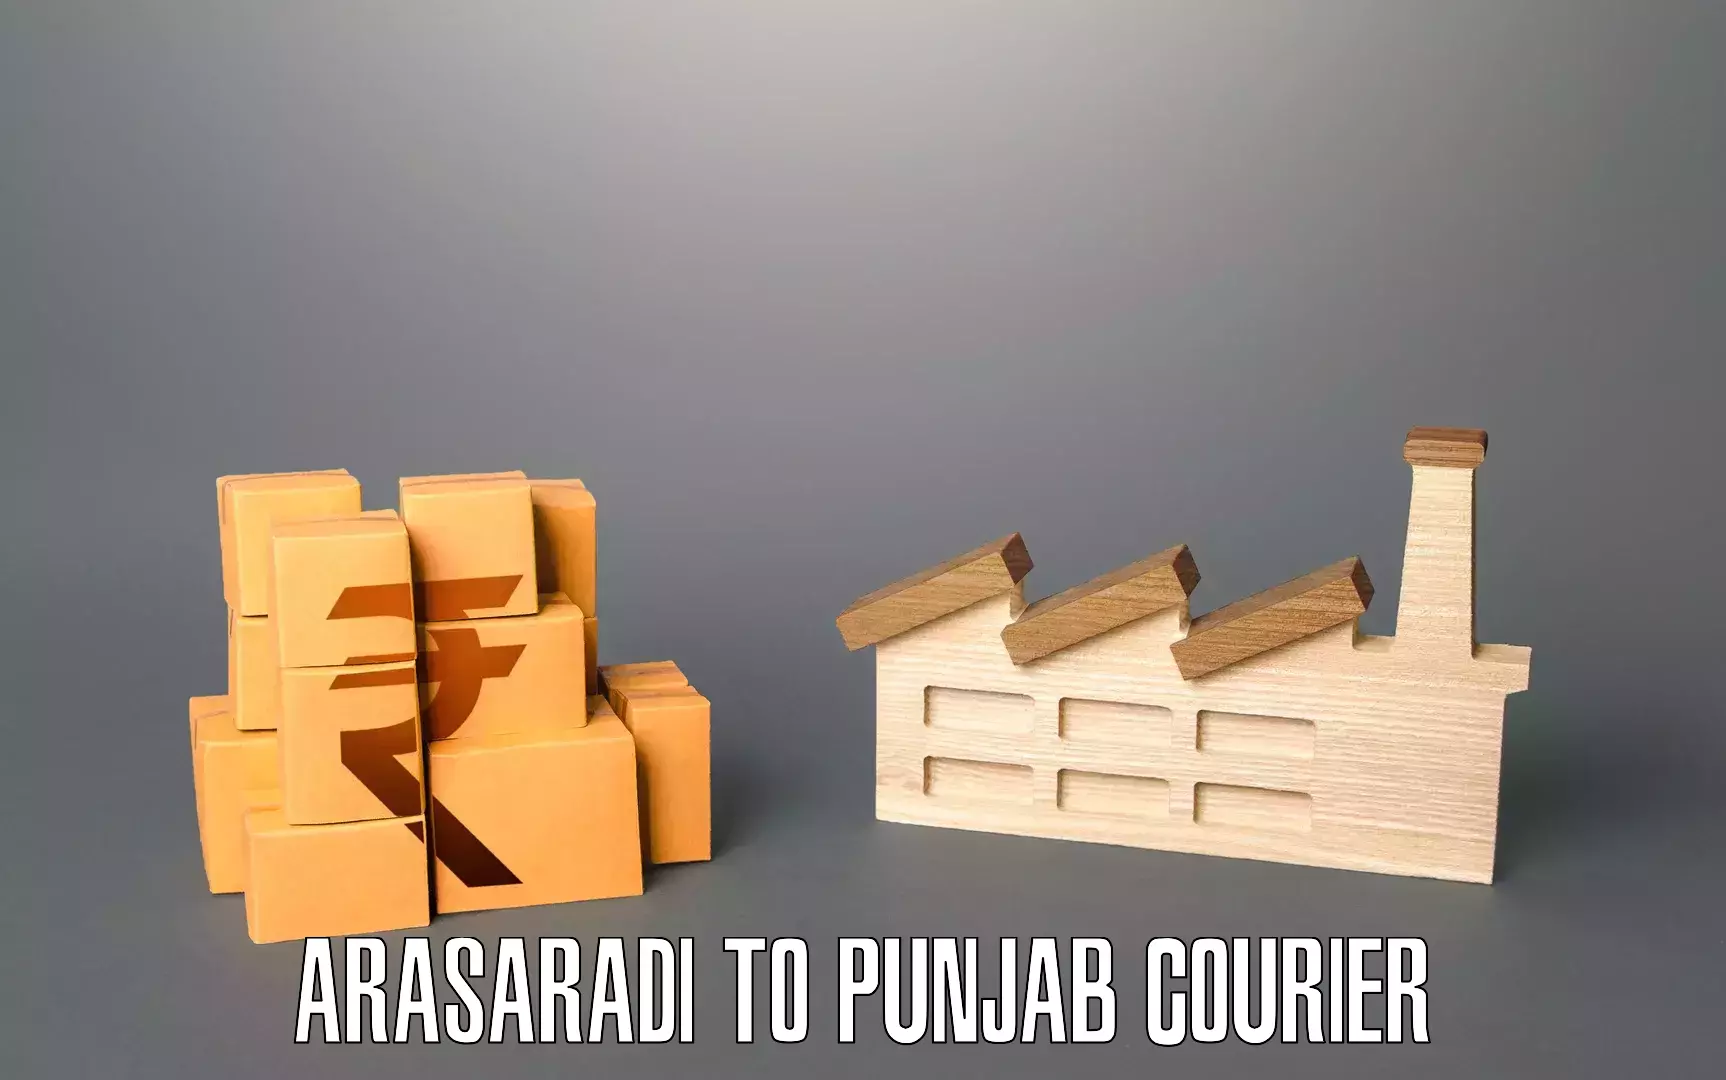 Furniture moving services in Arasaradi to Punjab